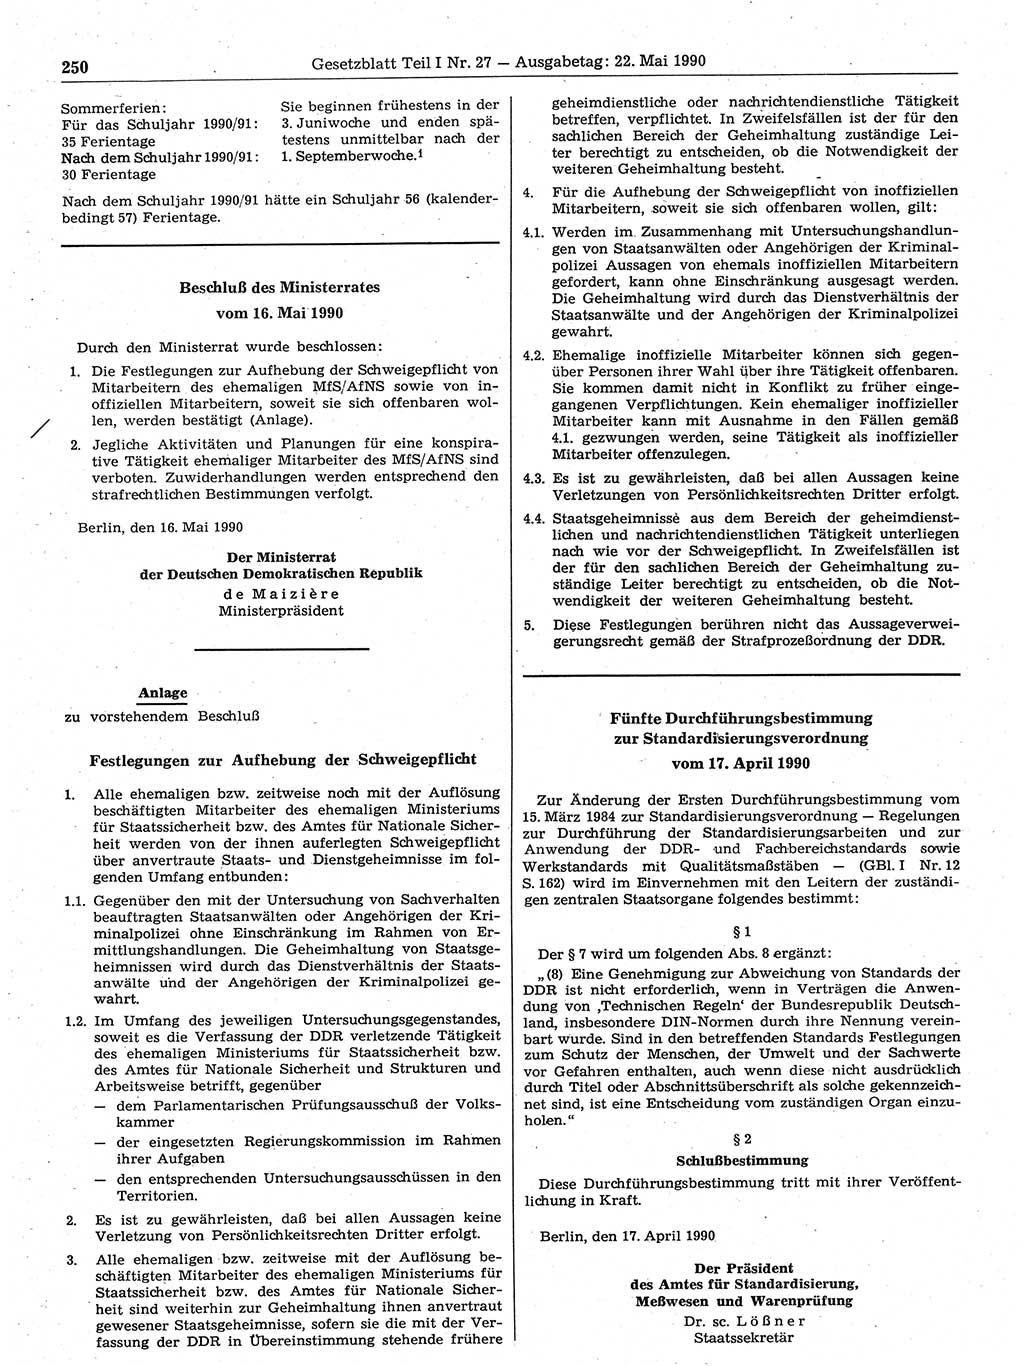 Gesetzblatt (GBl.) der Deutschen Demokratischen Republik (DDR) Teil Ⅰ 1990, Seite 250 (GBl. DDR Ⅰ 1990, S. 250)